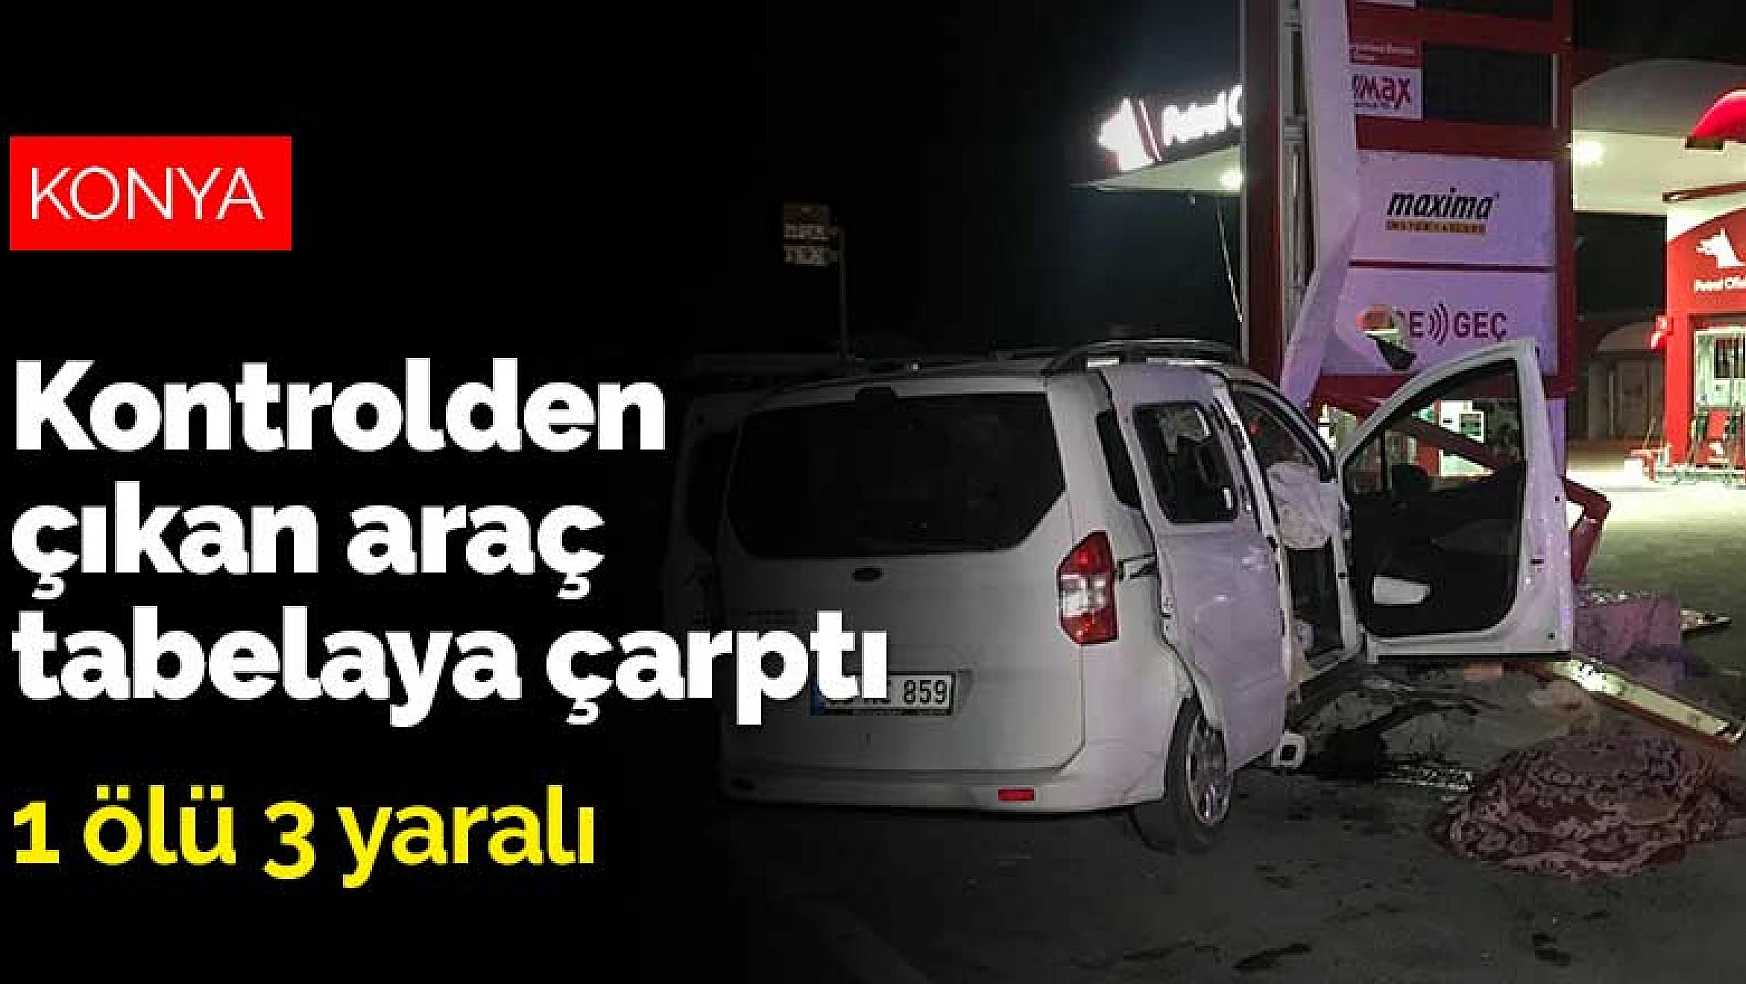 Konya'da kontrolden çıkan araç tabelaya çarptı: 1 ölü 3 yaralı